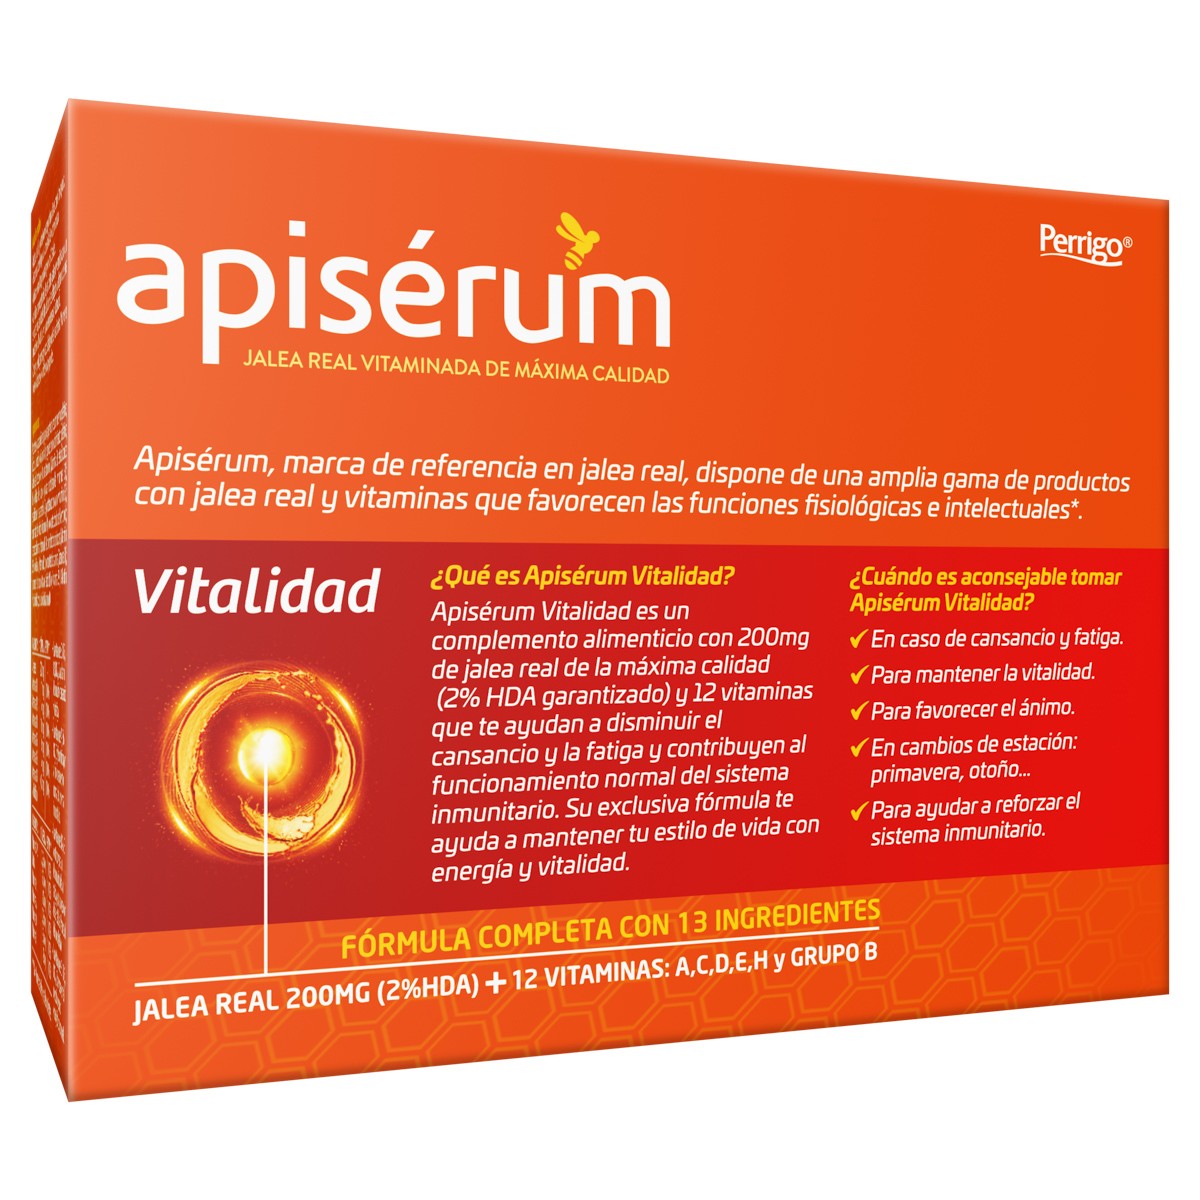 Apiserum vitalidad 30 cápsulas